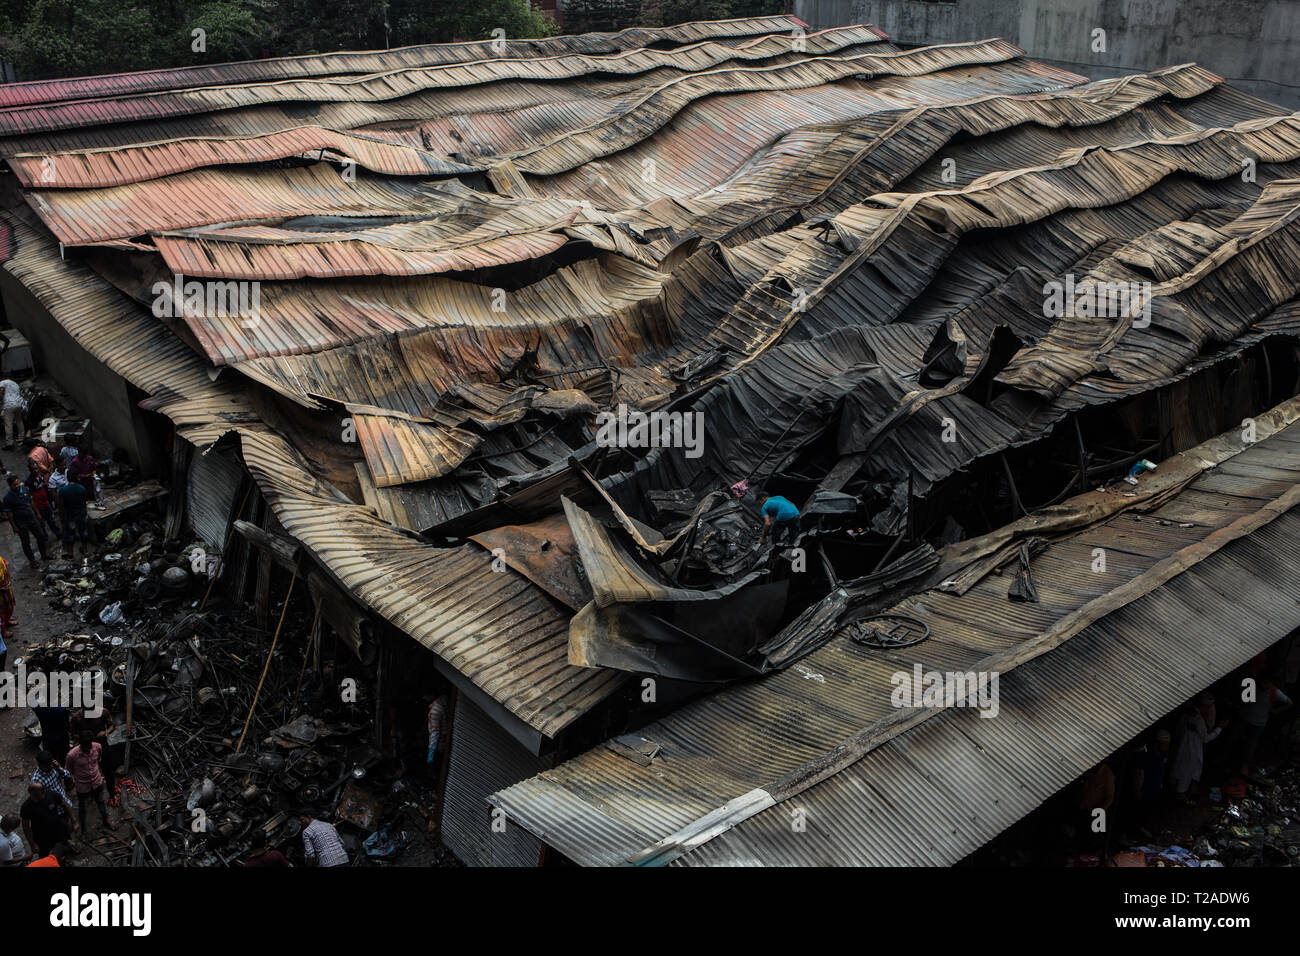 Dhaka, Bangladesch. 30 Mär, 2019. Feuer Tragödie am Gulshan DNCC Markt brach ein Feuer in der Küche Markt von Dhaka, der Hauptstadt von North City Corporation (Dncc) in Gulshan 1 Bereich wurde komplett verbrannt. Das Feuer war um 9:30 Uhr gelöscht, die von großen AKM Shakil Nawaz, Direktor (Betrieb und Wartung) von Feuerwehr und Zivilschutz bestätigt. Rund 291 Geschäfte waren im Feuer ausgebrannt. Fast alles auf dem Markt verwandelte sich in Asche. Quelle: Md. Rakibul Hasan/Pacific Press/Alamy leben Nachrichten Stockfoto